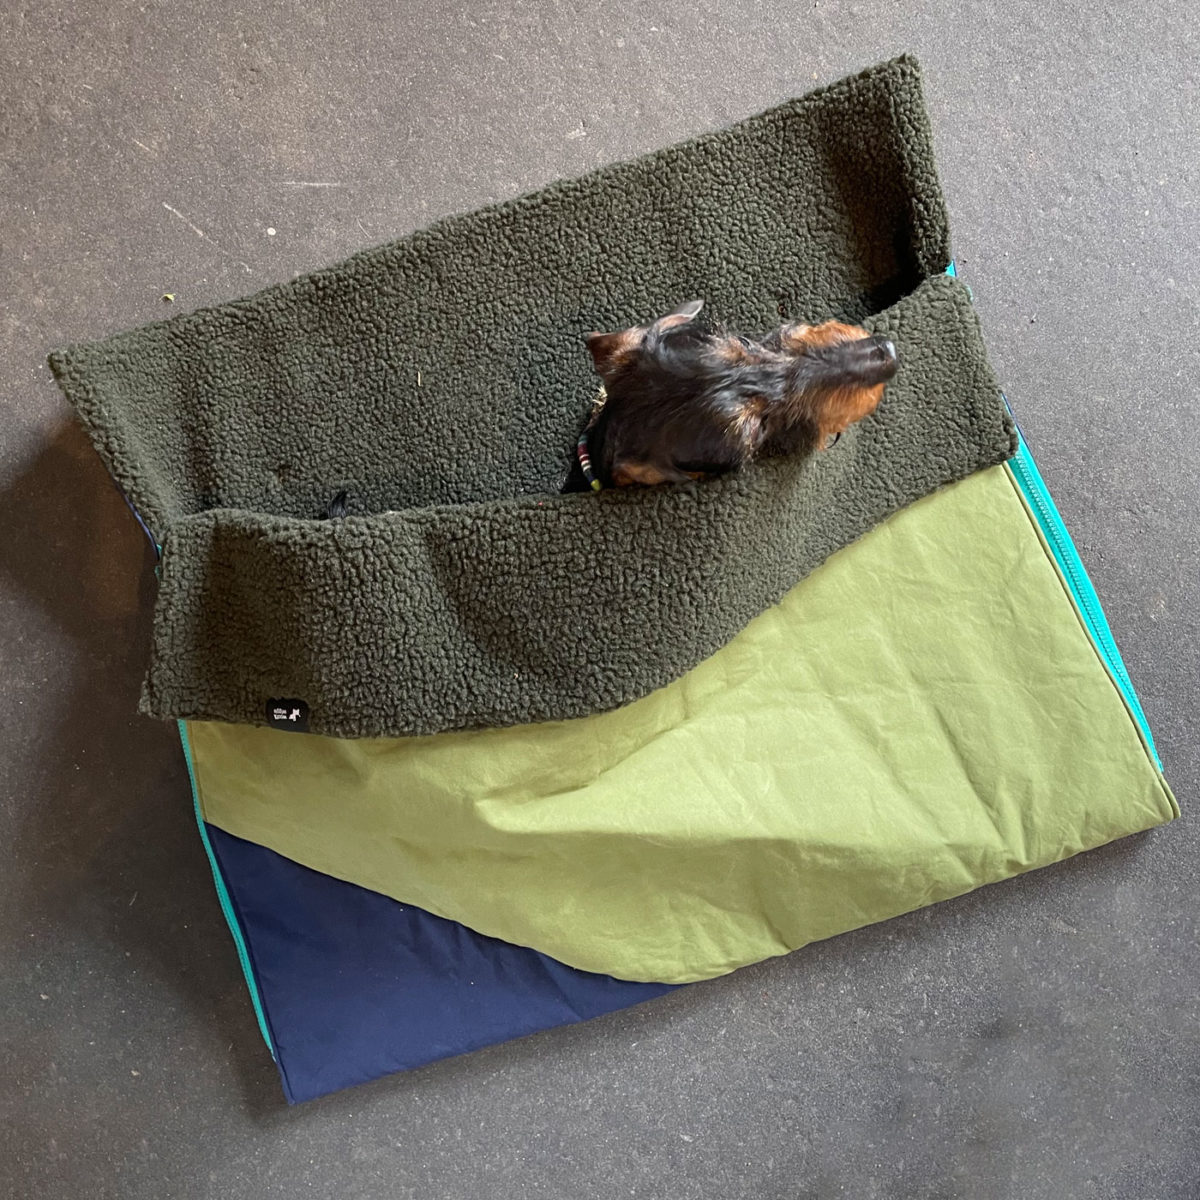 Dog sleeping bag "Wanderlust" with dachshund Mikkel